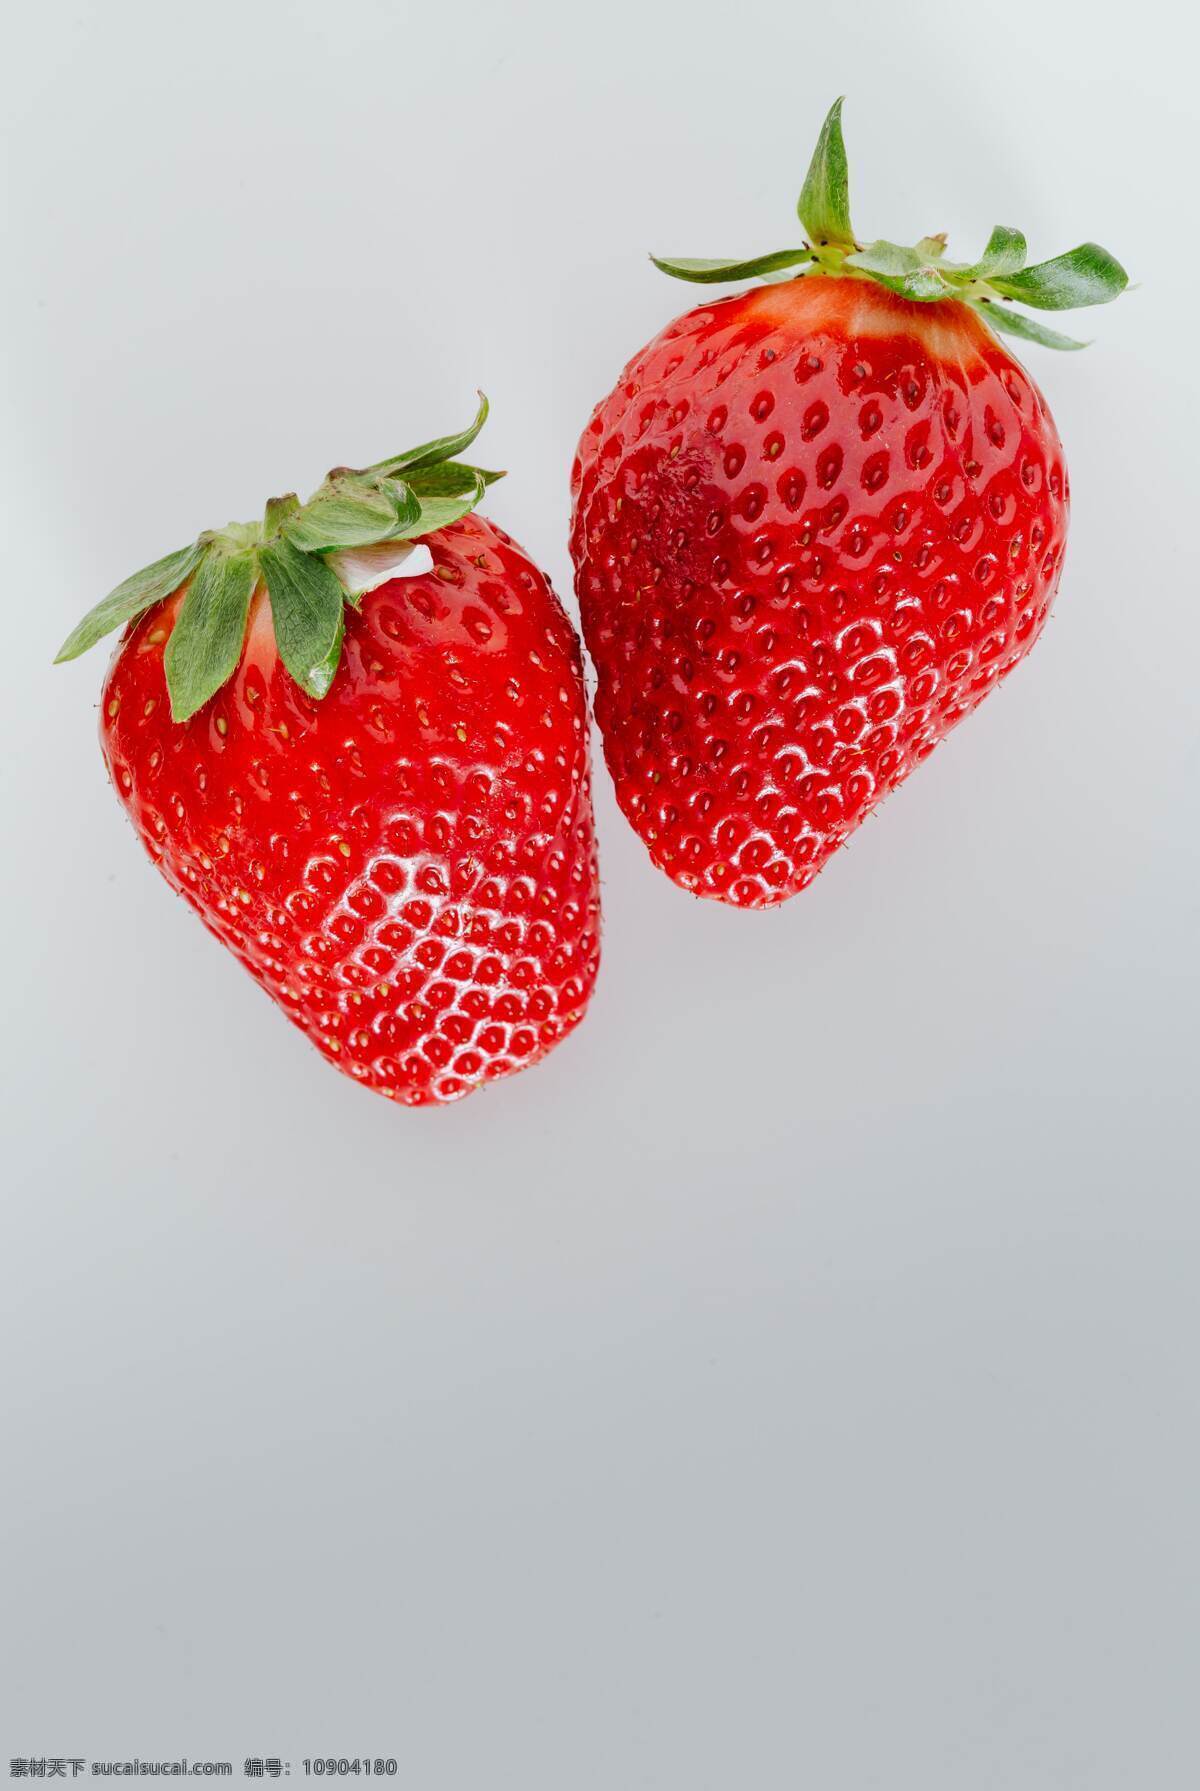 草莓图片 草莓 香味 果香 果实 草莓叶 草莓汁 喜光照 热带 解暑 止渴 津甜 酸甜 香甜 红色水果 水果 生物世界